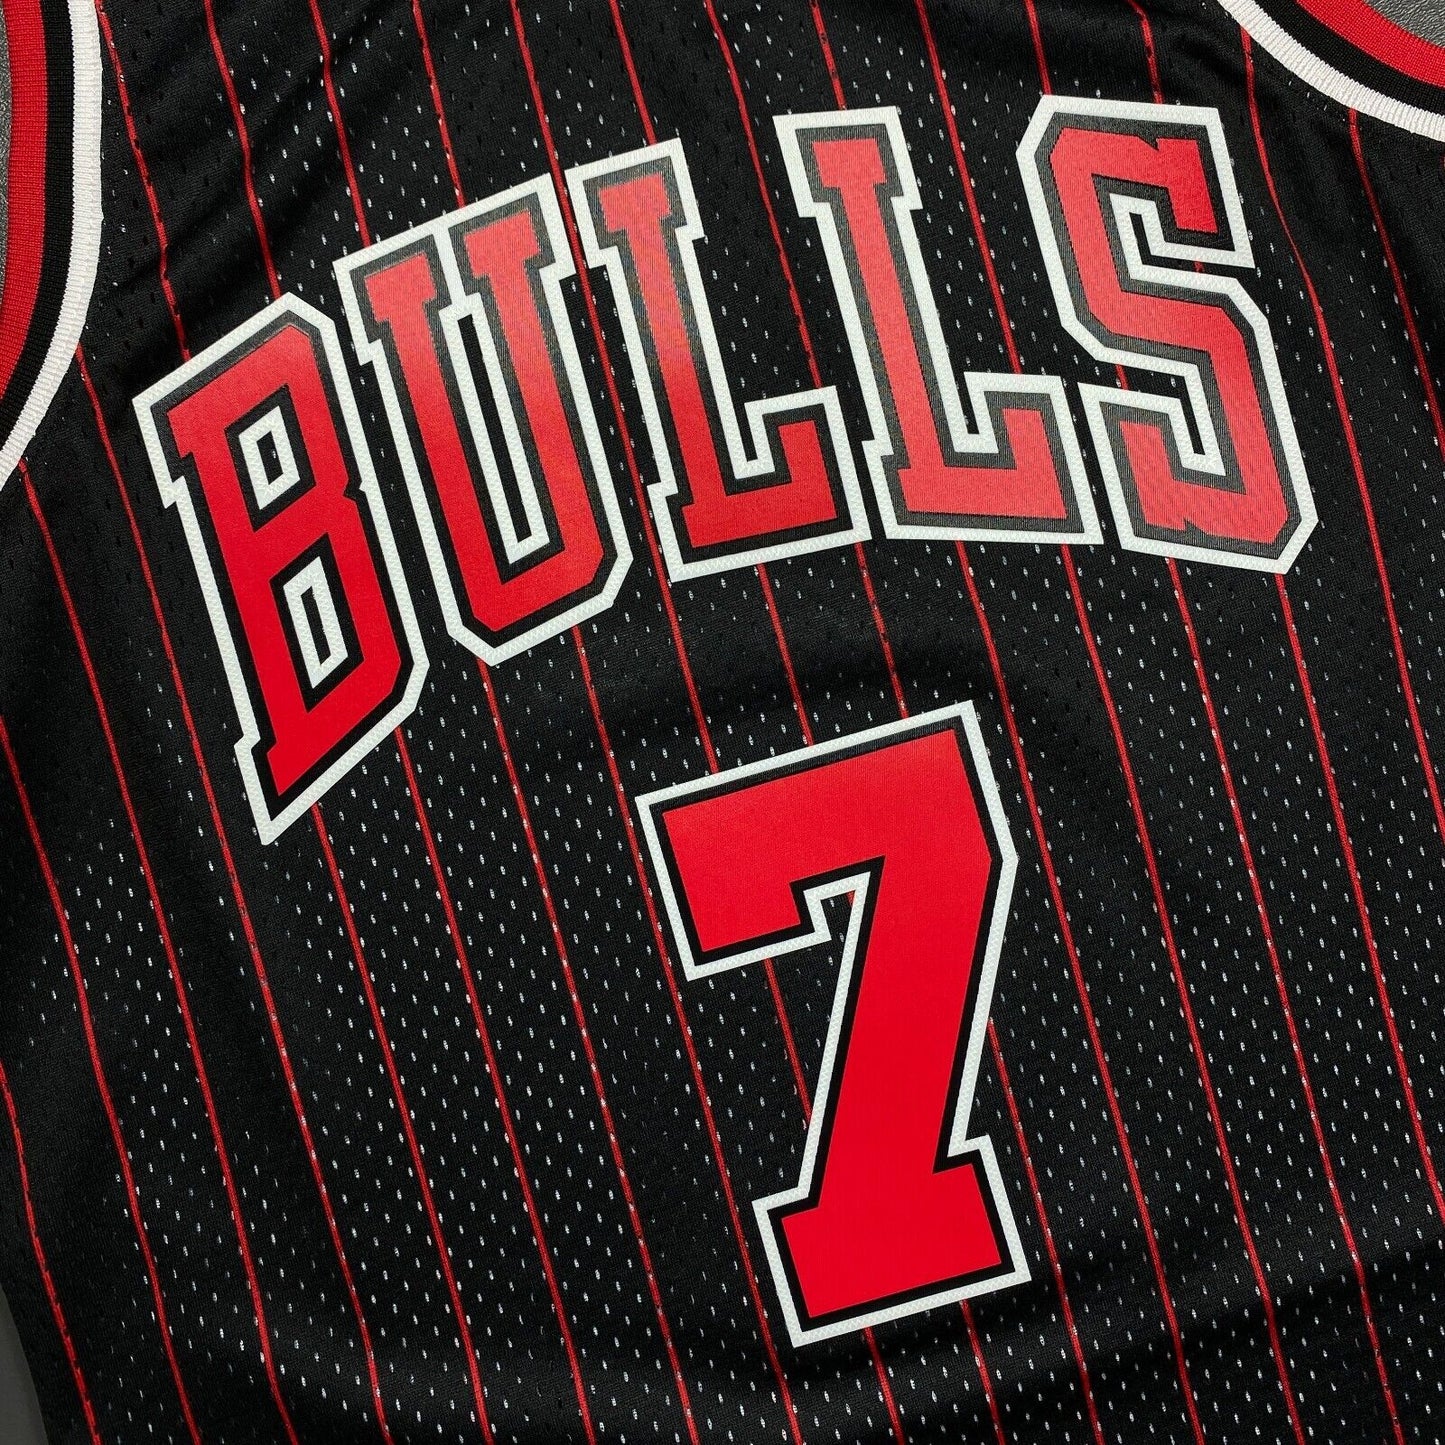 100% Authentic Toni Kukoc Mitchell & Ness Chicago Bulls Signed Jersey COA JSA